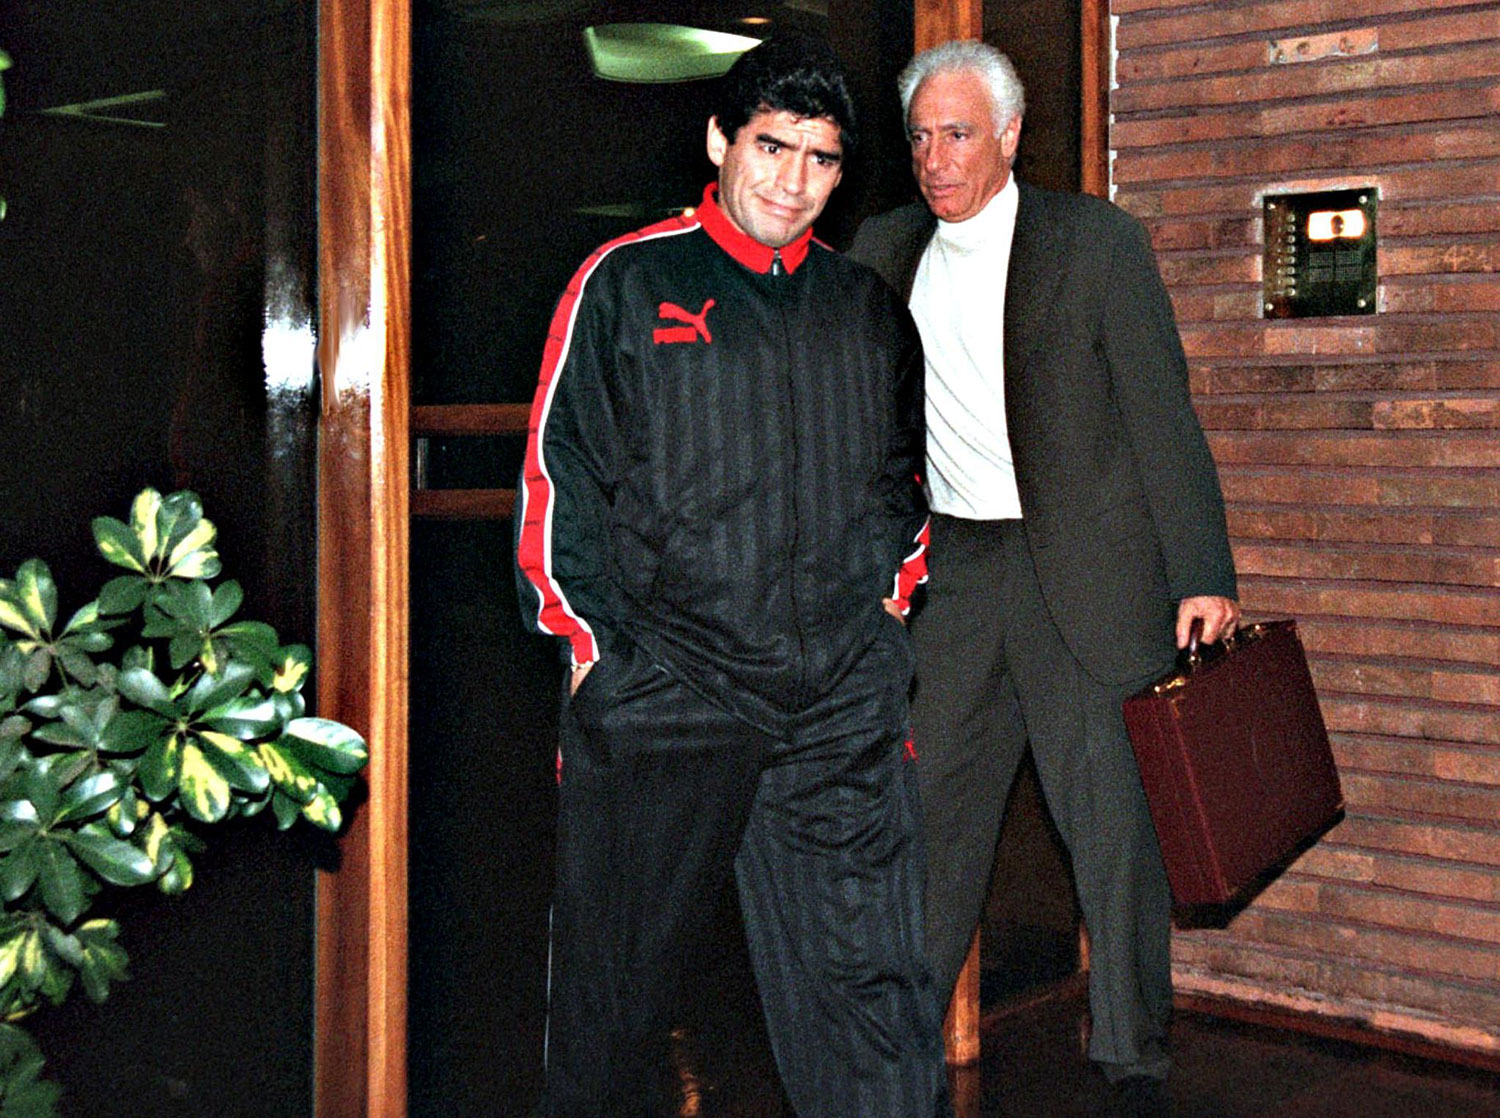 Maradona a comienzos de septiembre de 1997 luego de que diera positivo por cocaína tras el partido contra Argentino Jrs. el 24 de agosto de 1997. ©CLARIN/AFP via Getty Images.